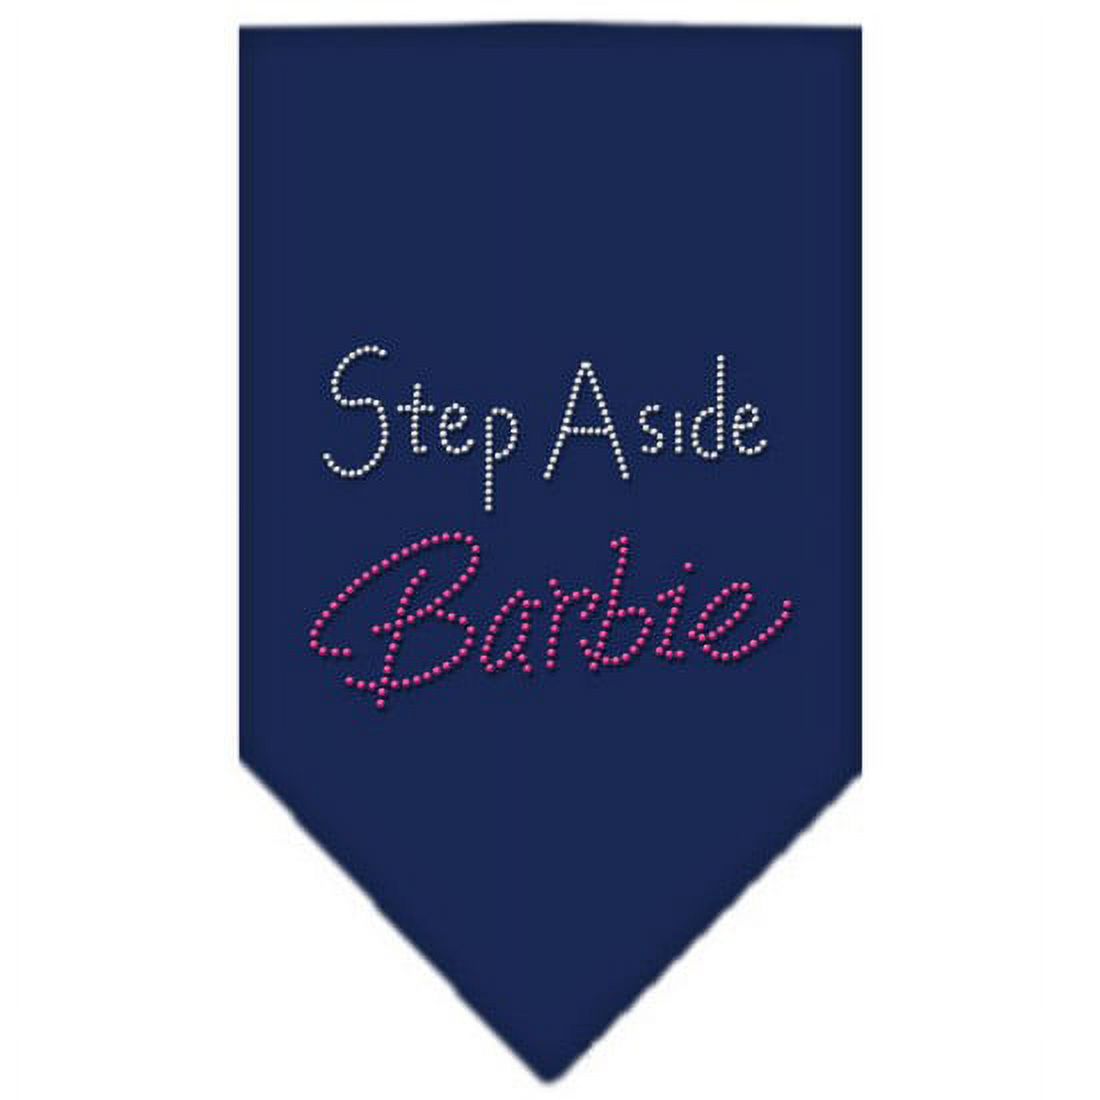 Step Aside Barbie Rhinestone Bandana Navy Blue large - image 1 of 2